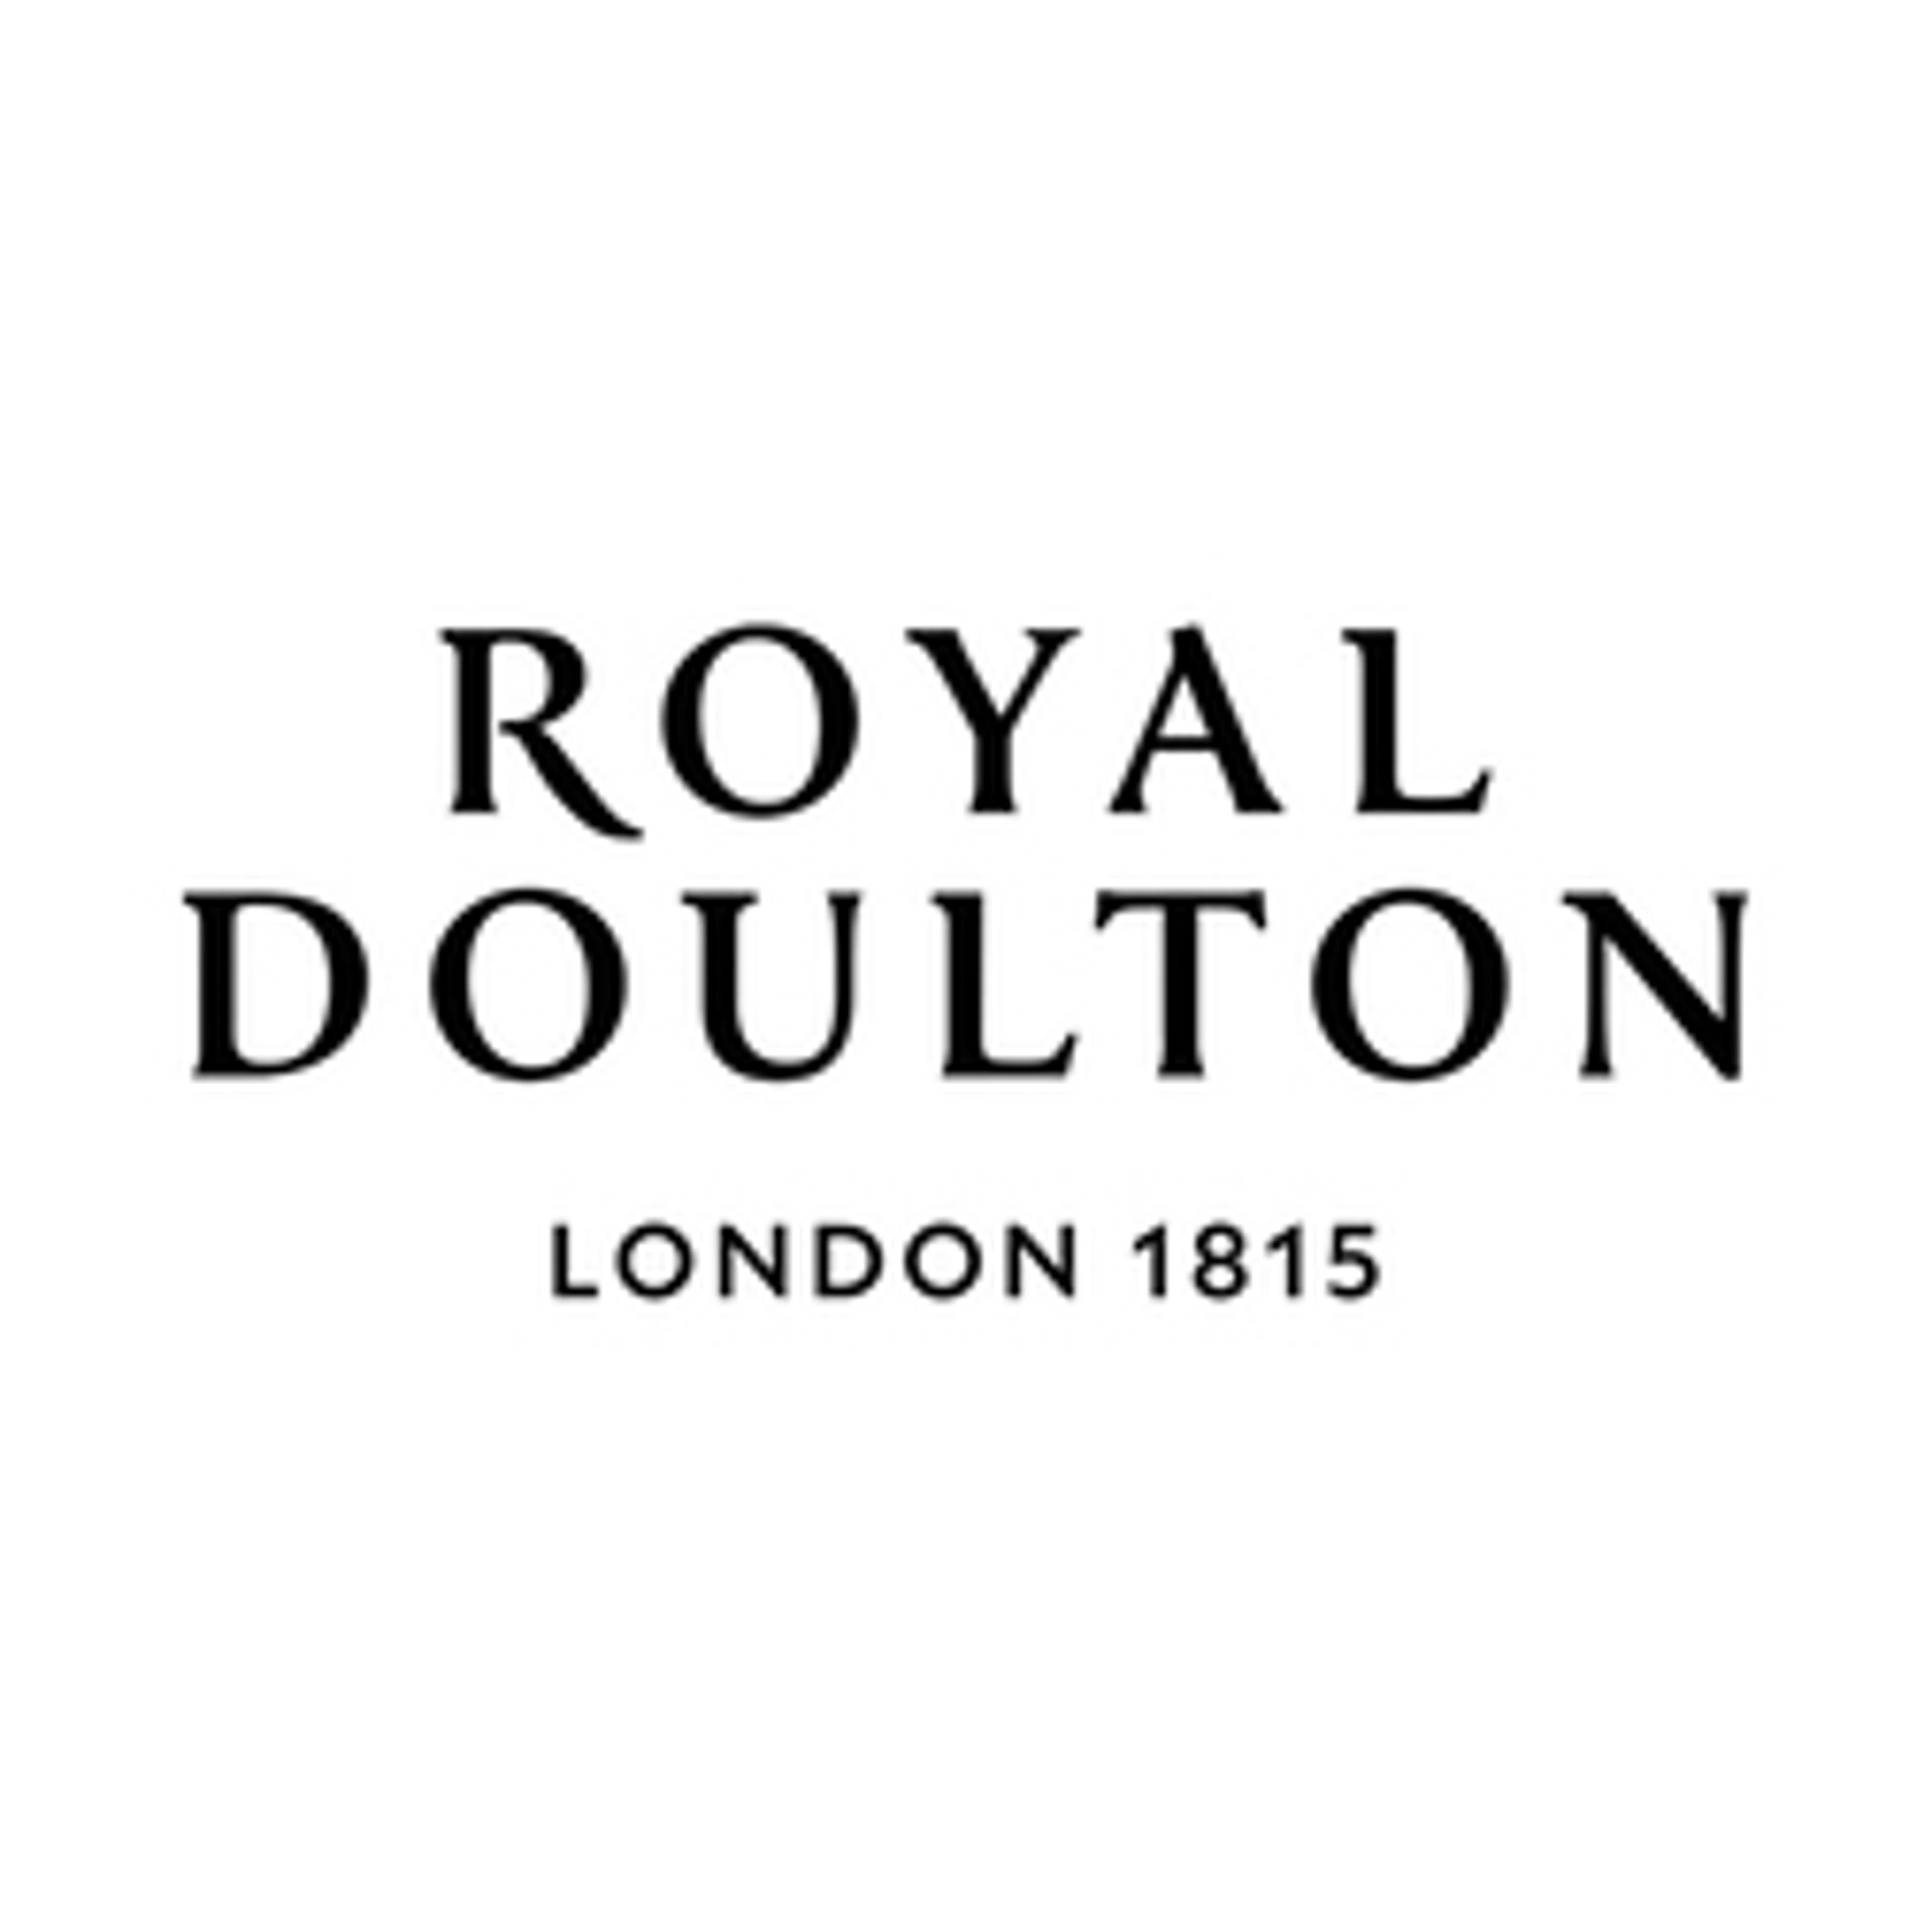  Royal Doulton 